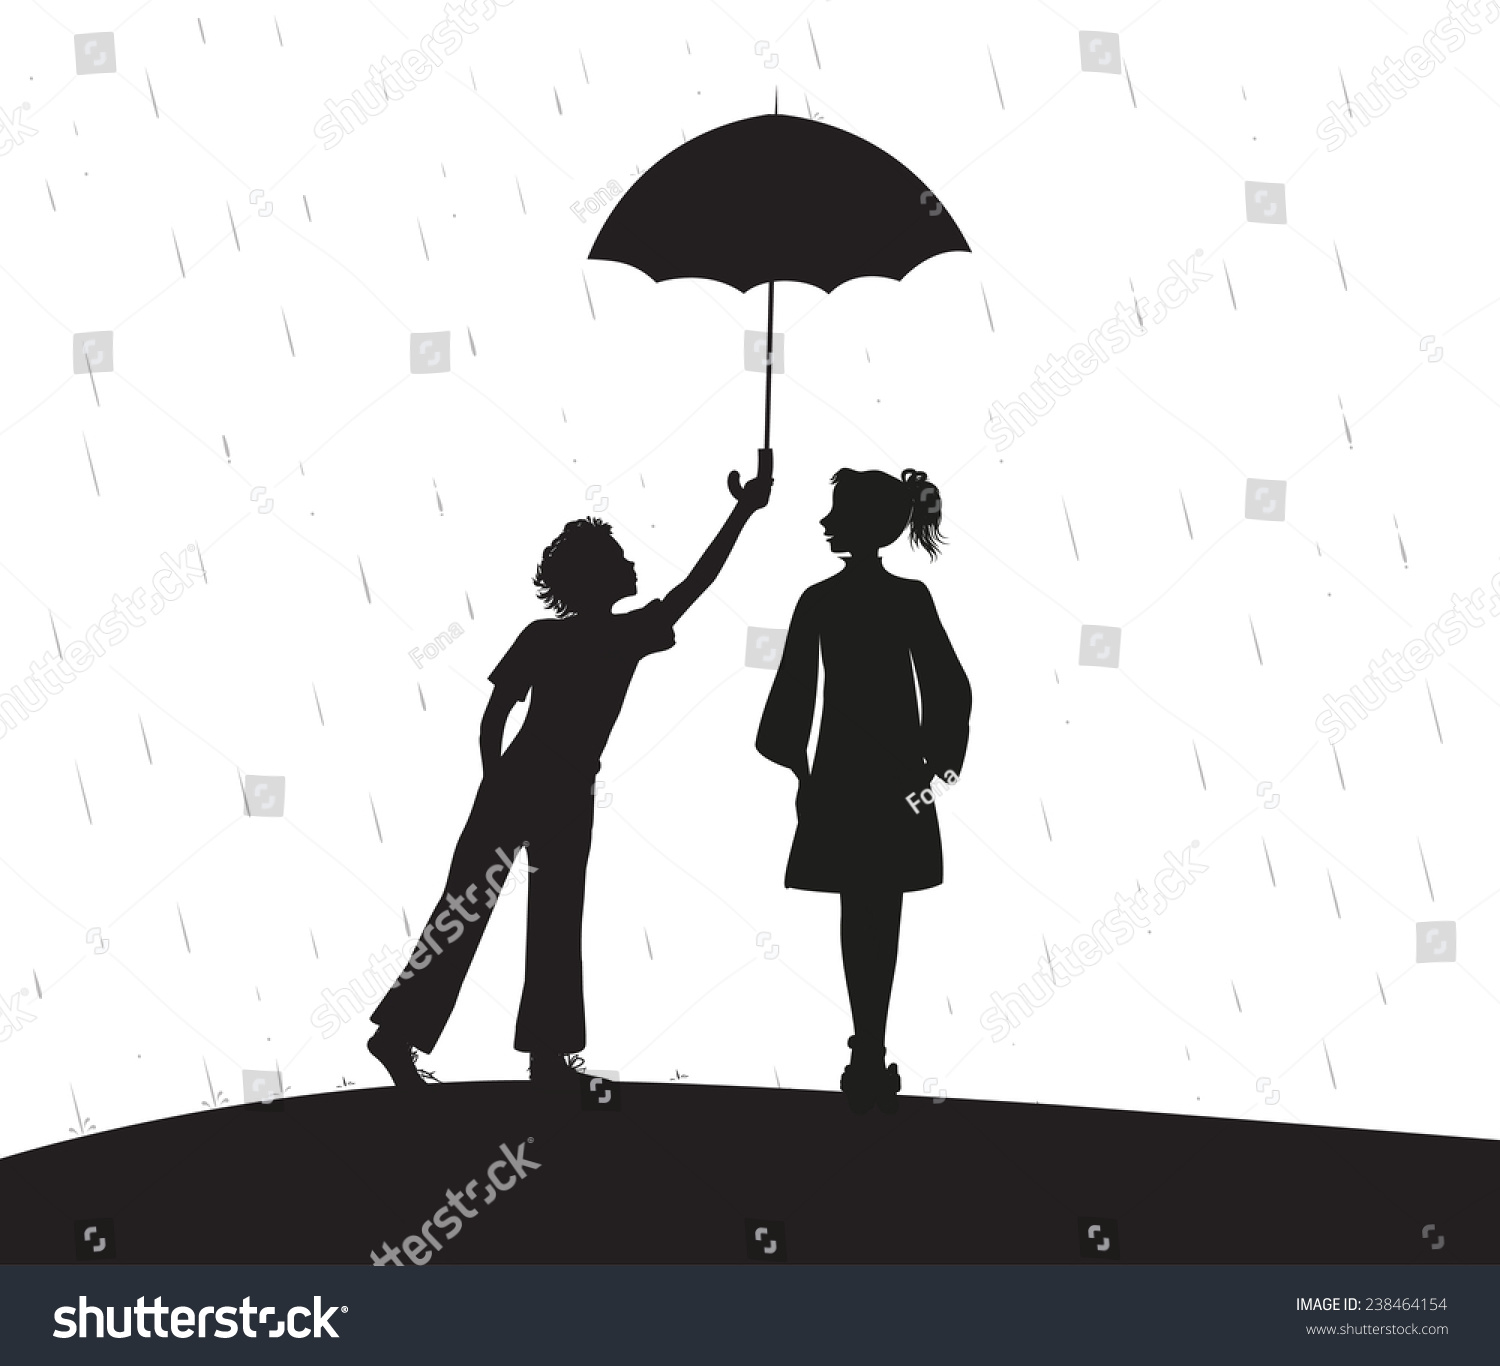 Одолжил ей зонтик. Человек с зонтом тень. Силуэт человека с зонтиком. Силуэт парня и девушки под зонтом. Человек под зонтом.